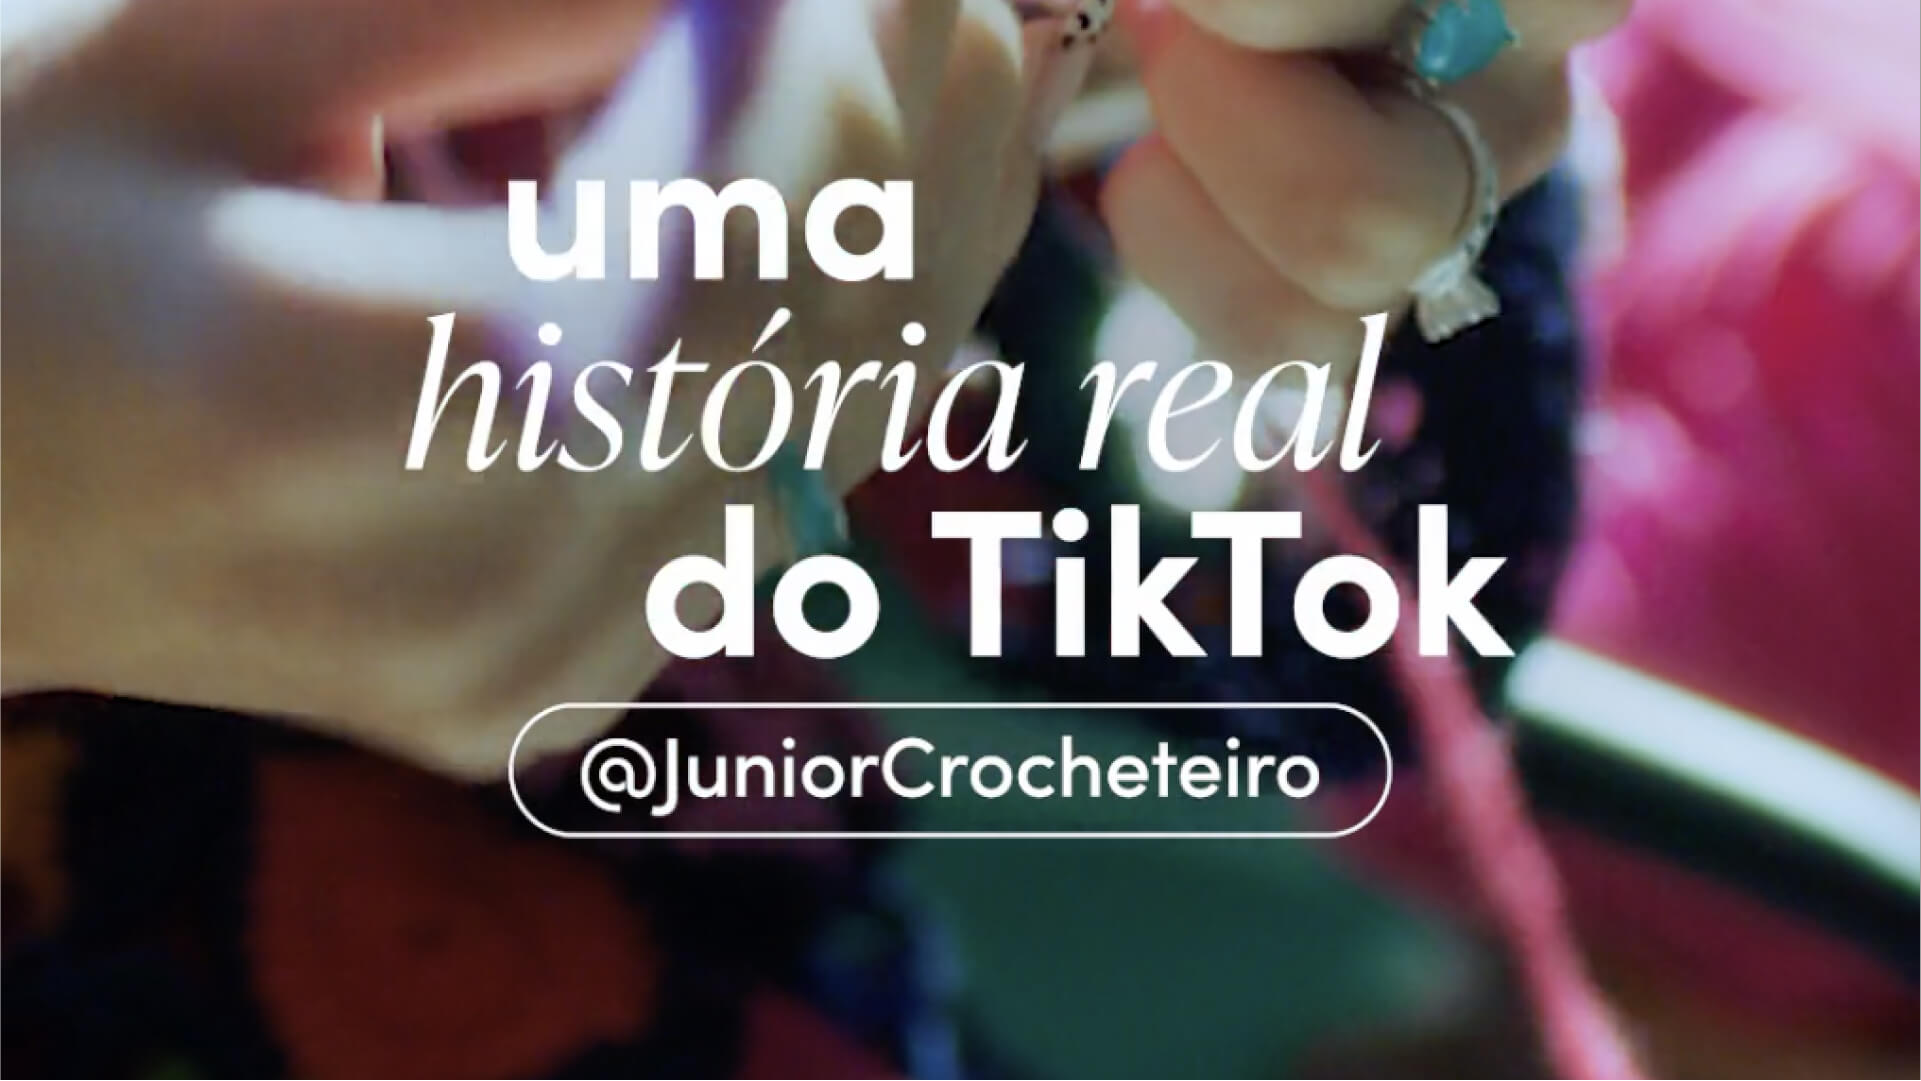 TikTok Histórias Reais Junior Crocheteiro